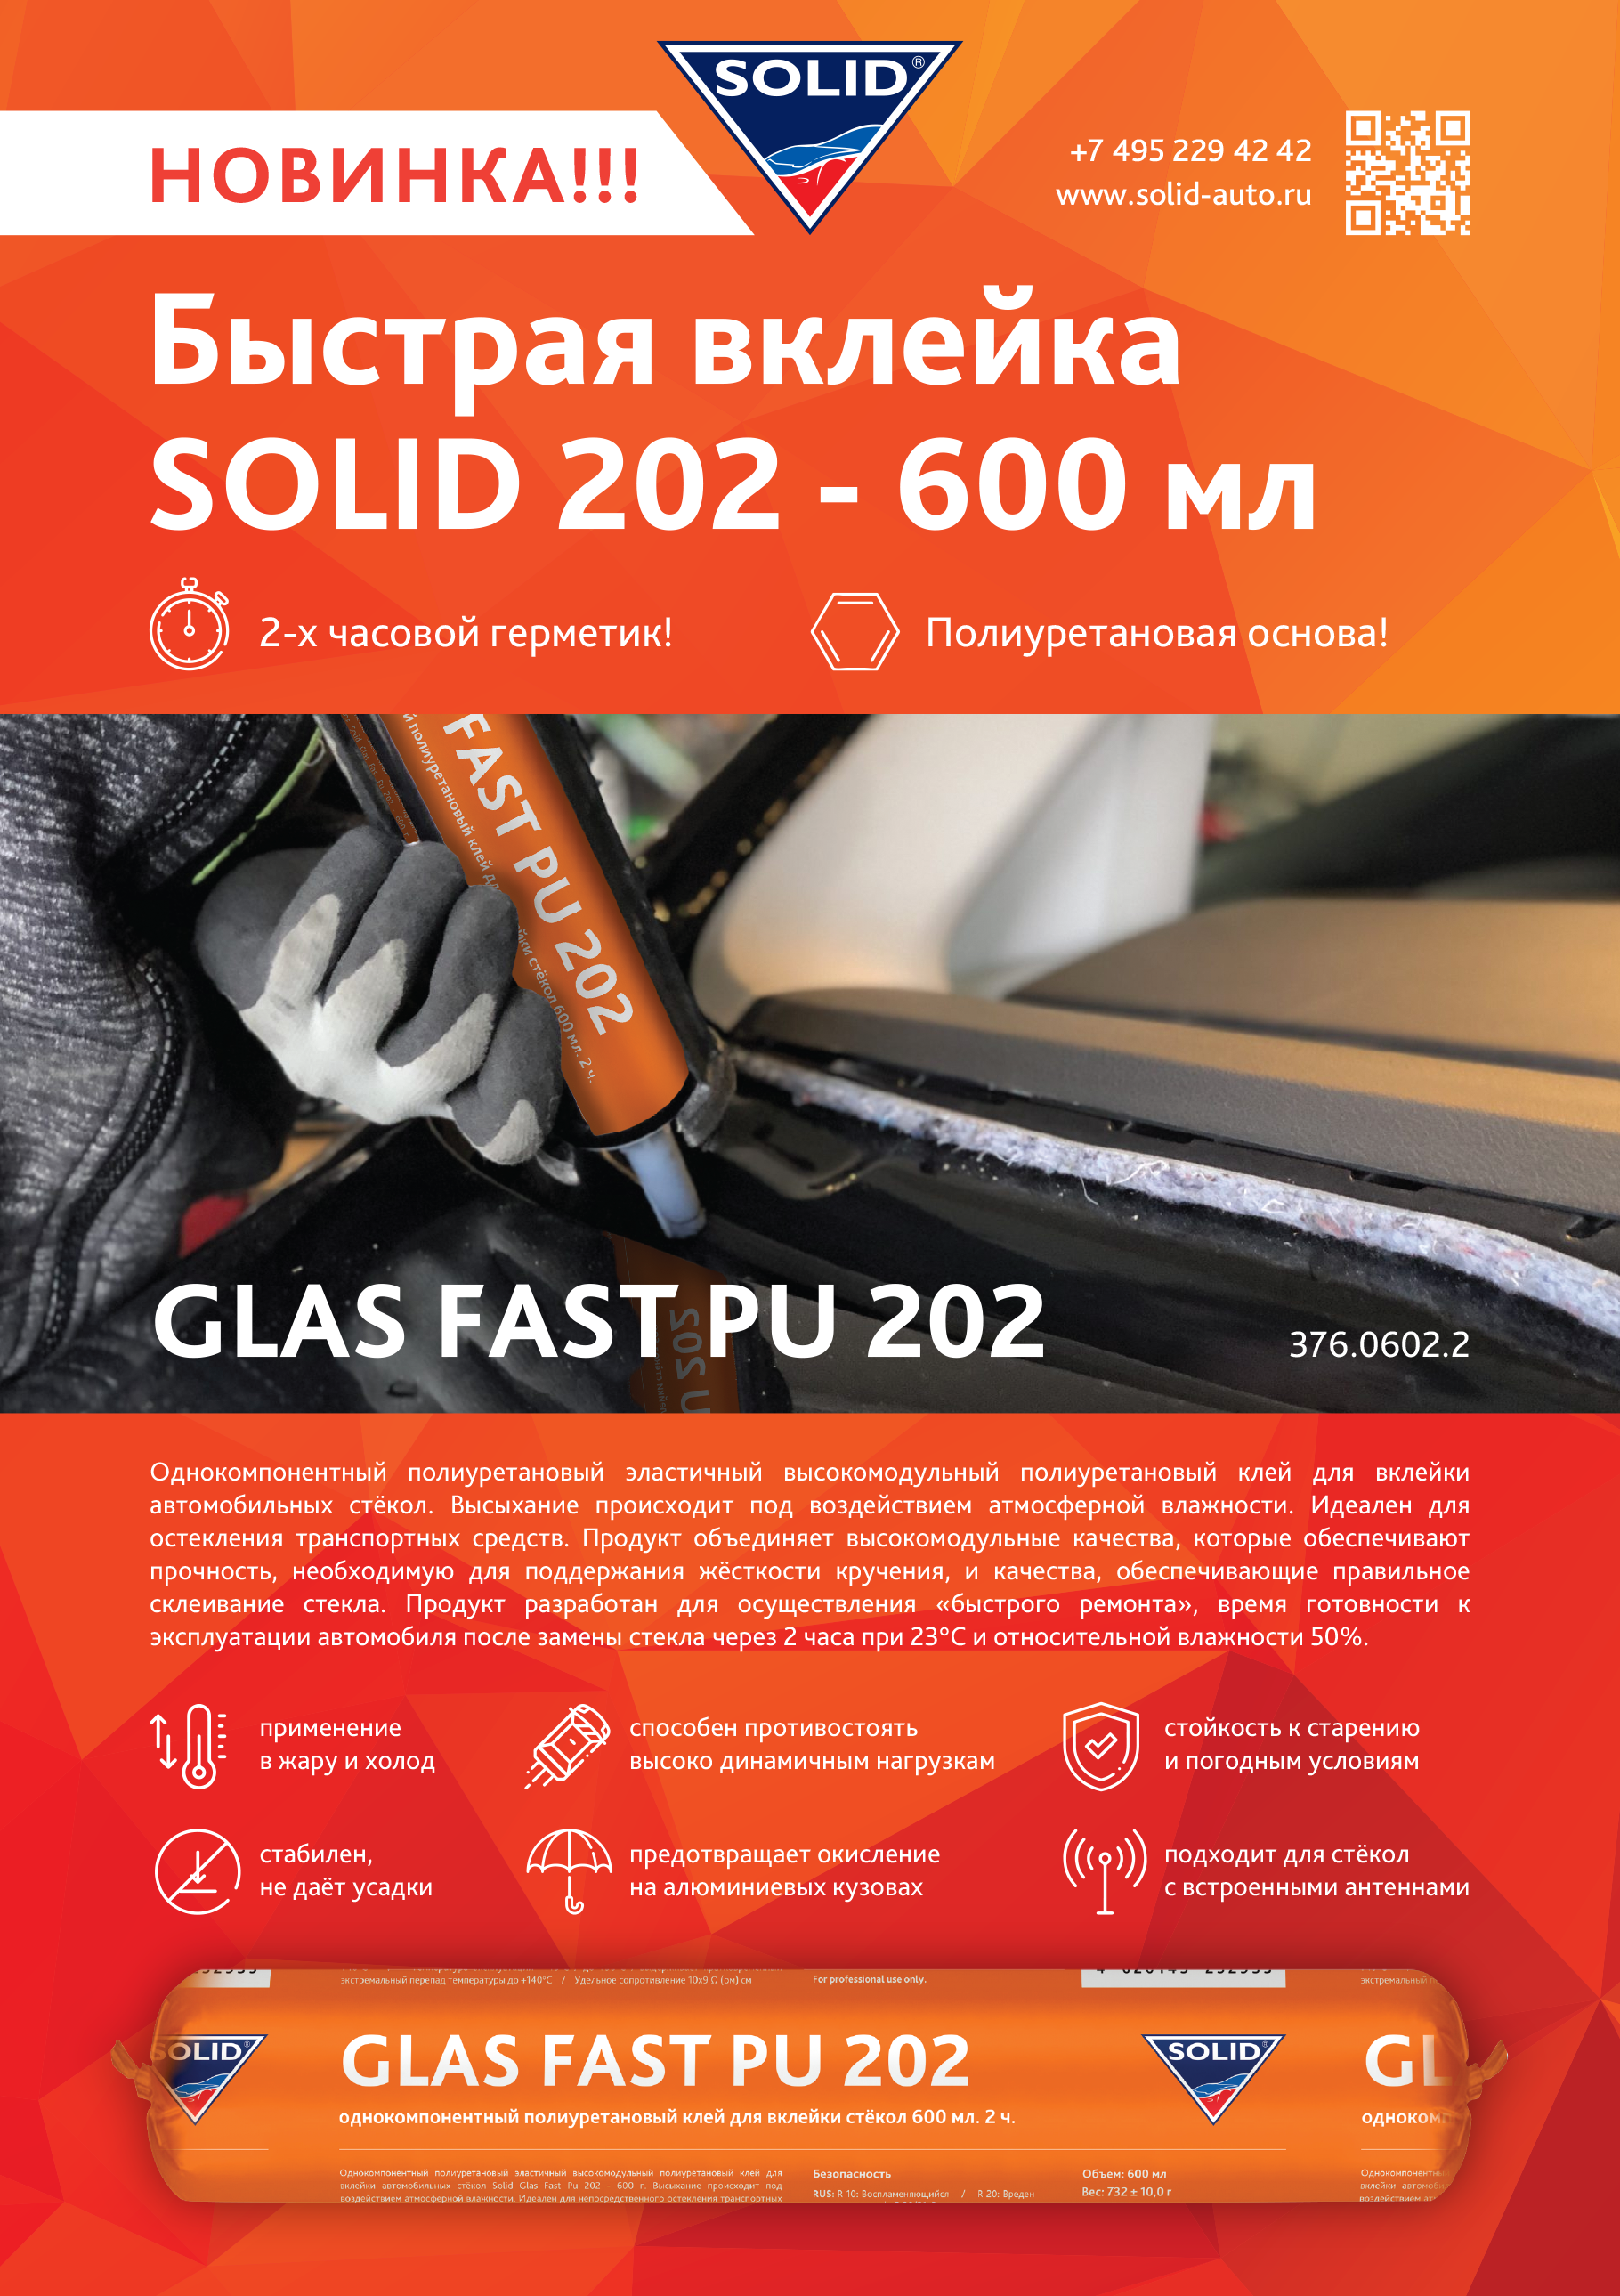  Новая фасовка 2-х часового герметика для вклейки стёкол SOLID GLAS FAST PU 202 600ml уже в продаже!